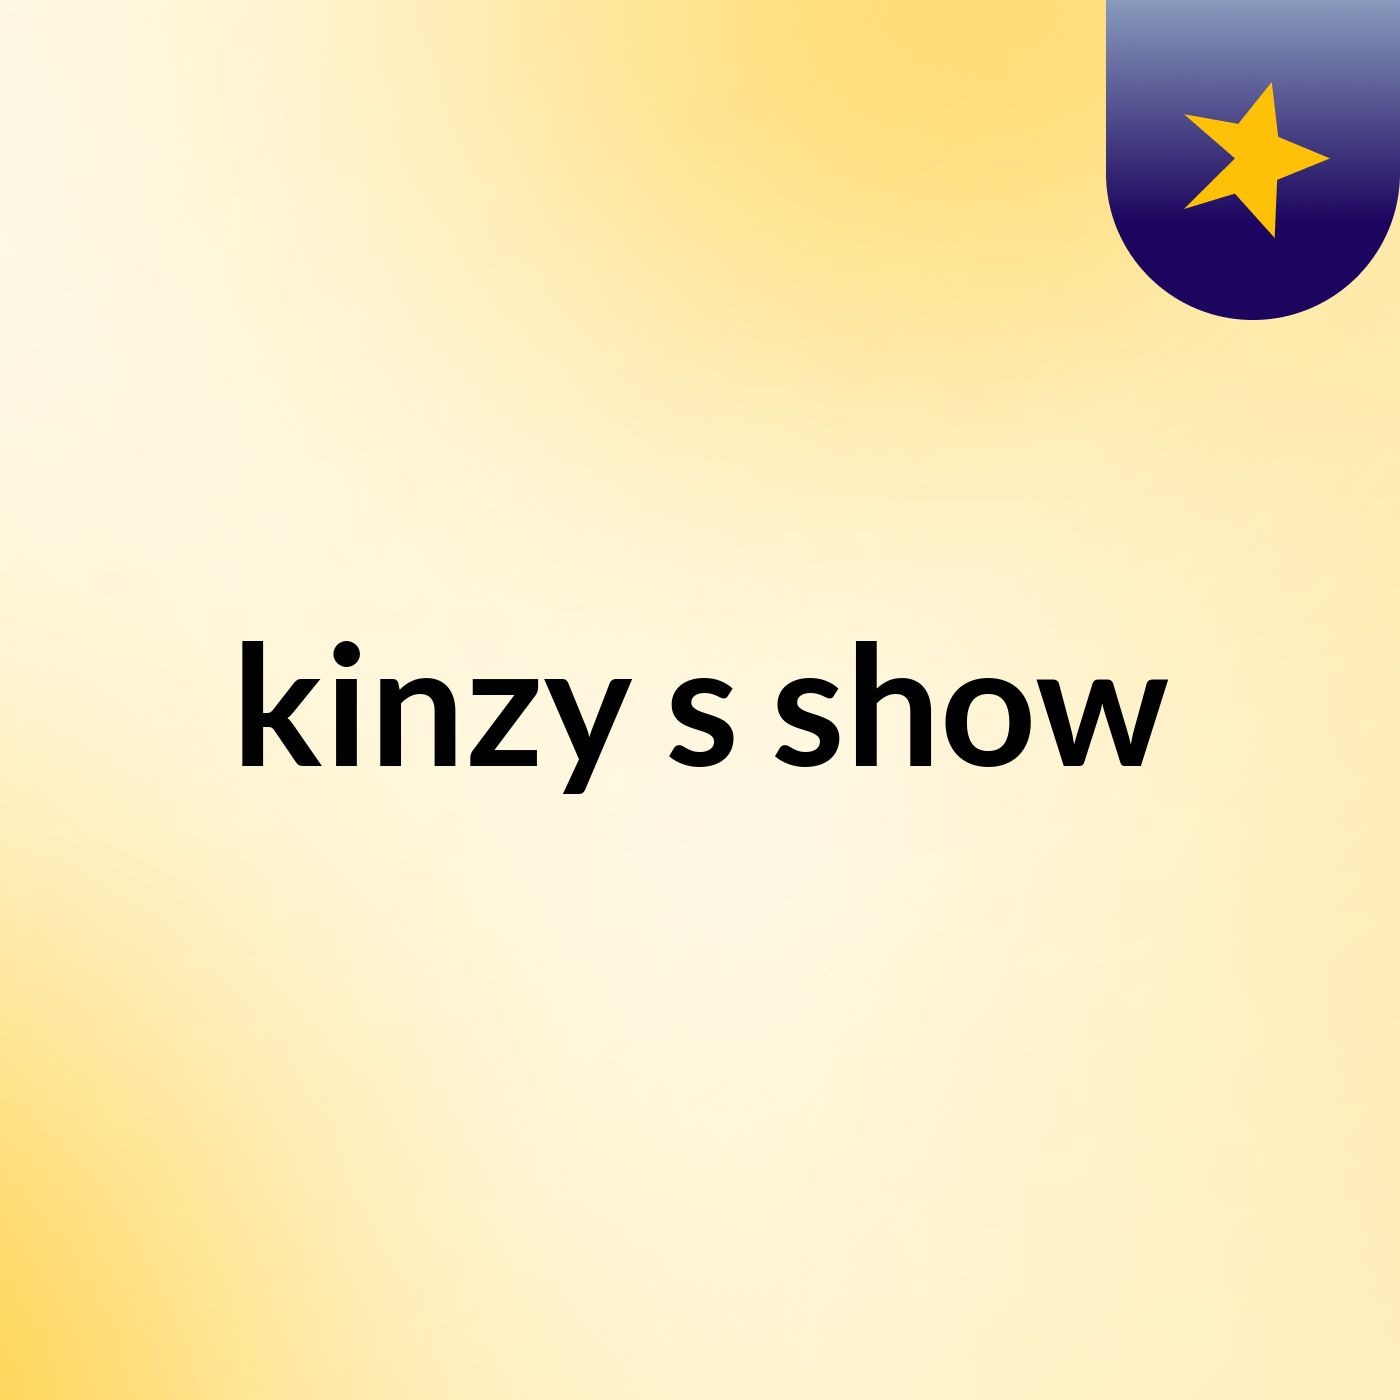 kinzy's show